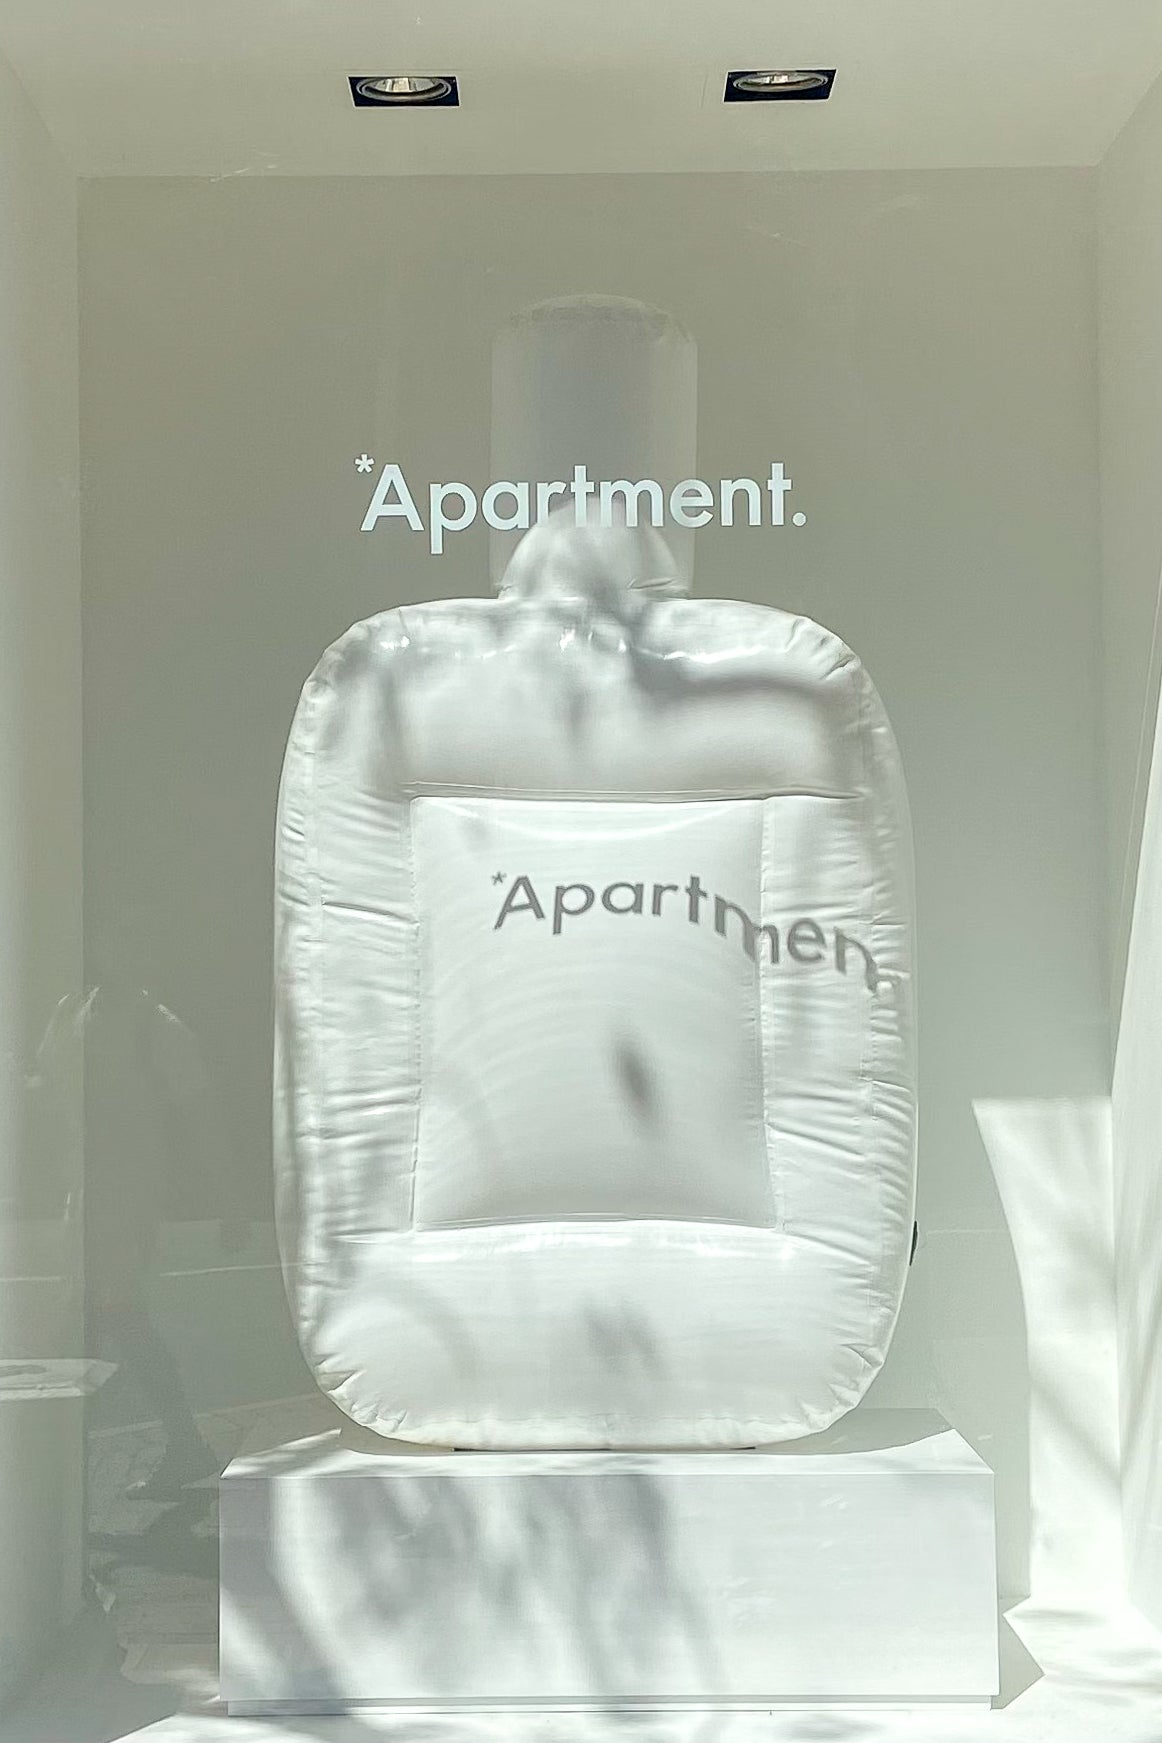 *Apartment